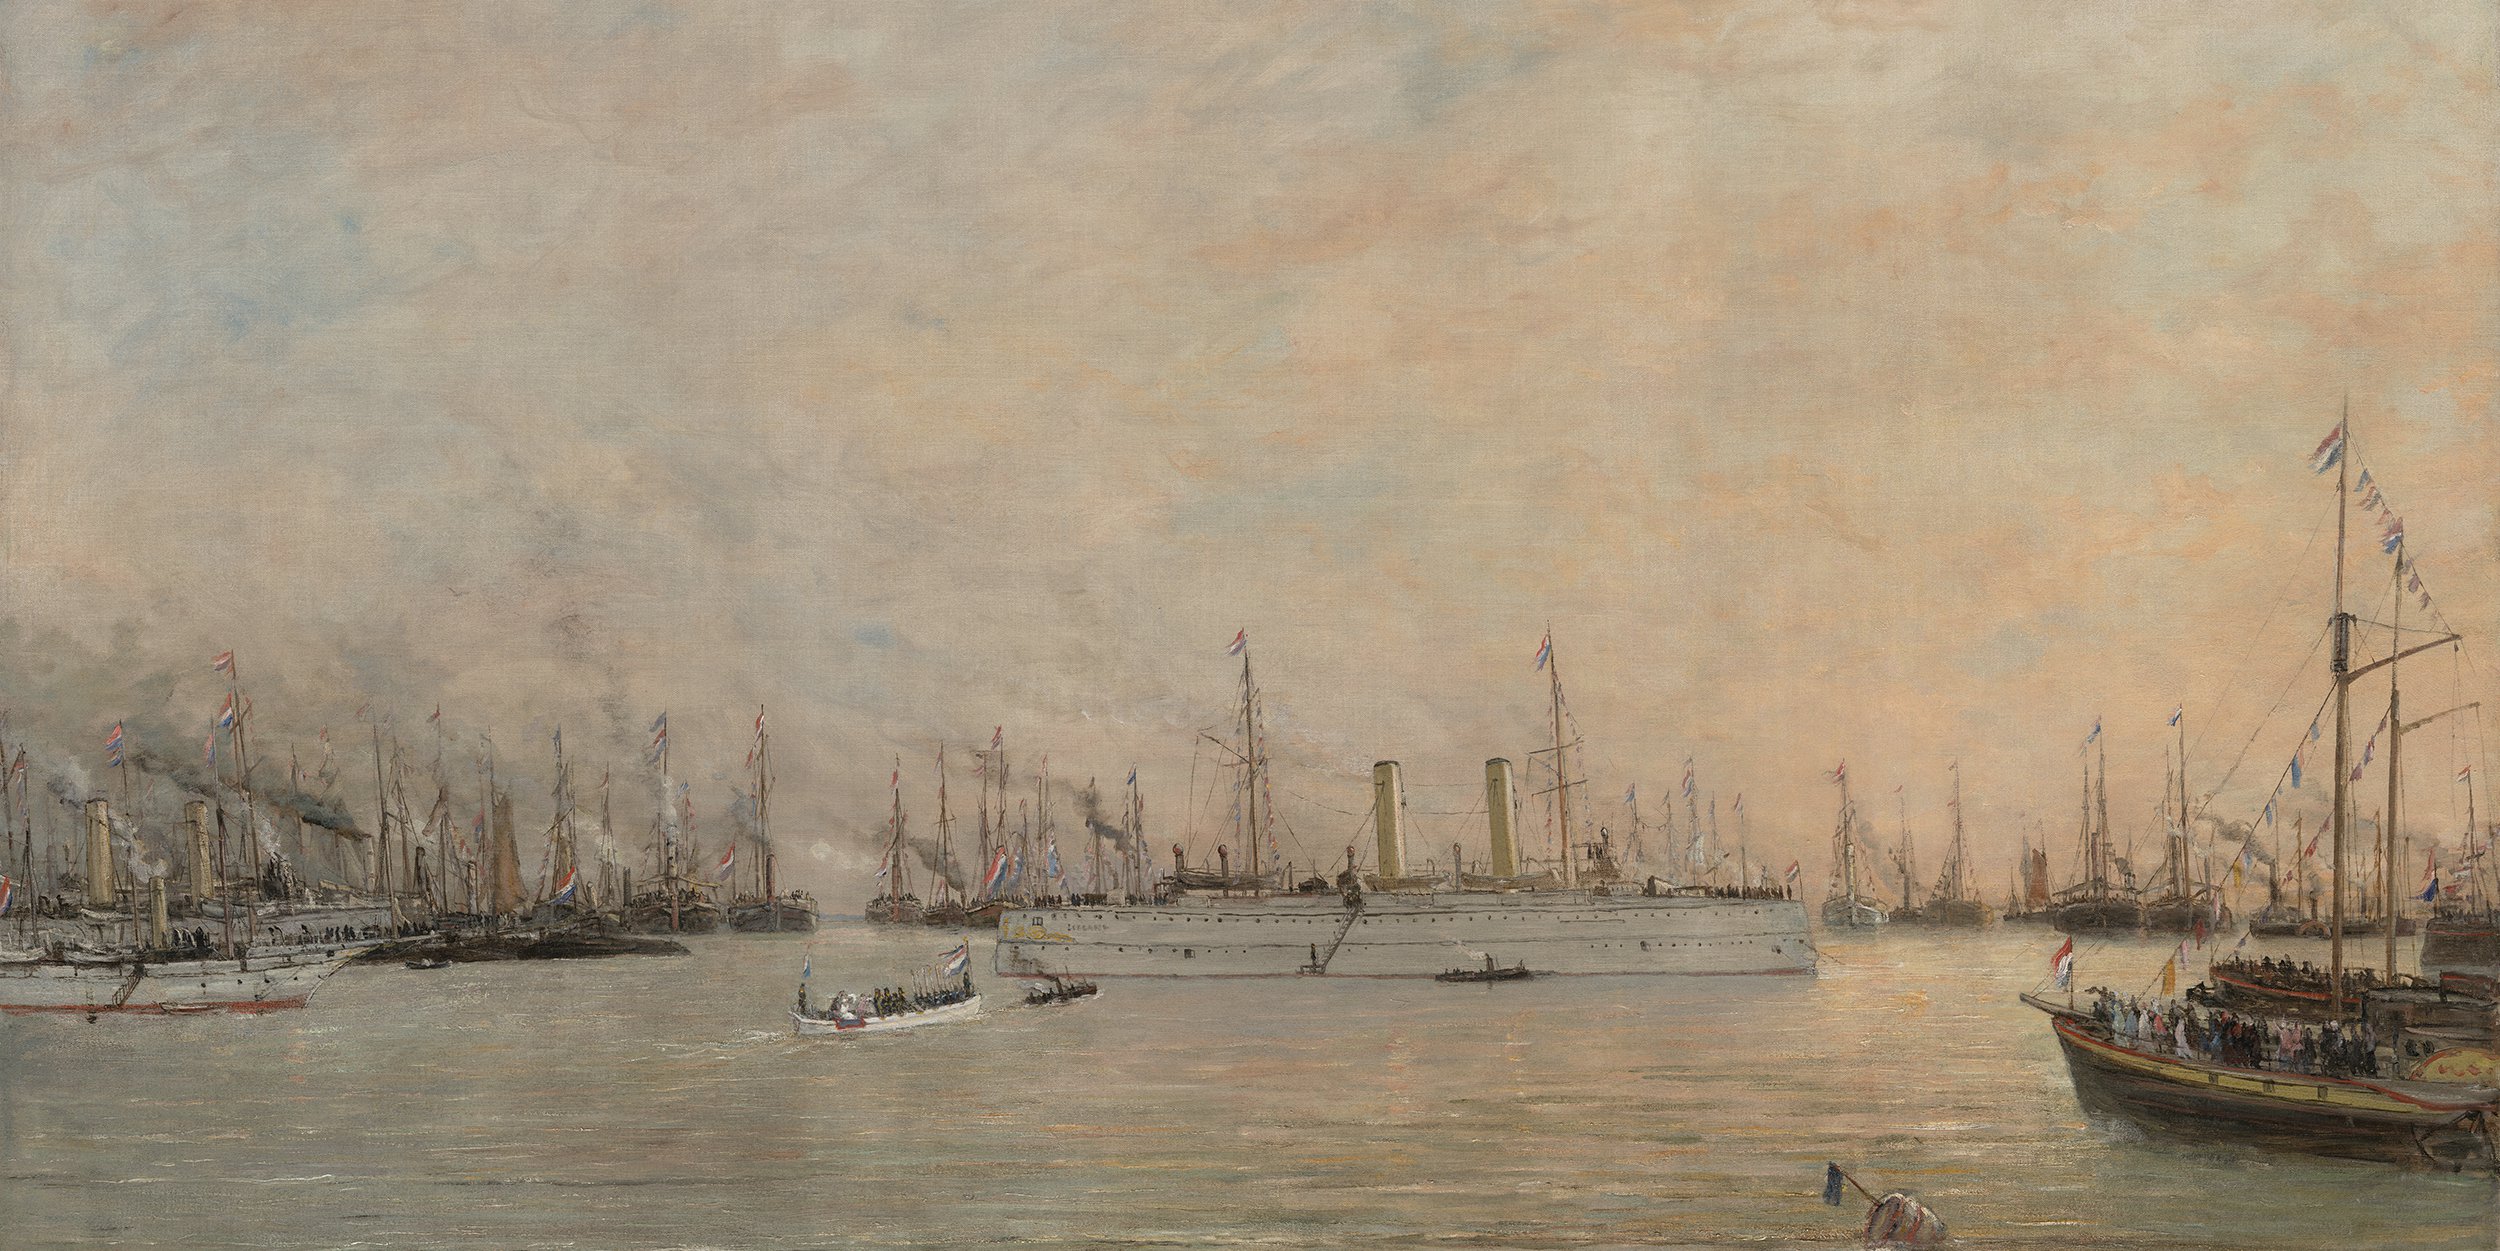 Een drukke verzameling stoomschepen en zeilschepen aan de horizon tijdens de vlootschouw voor de koningin.